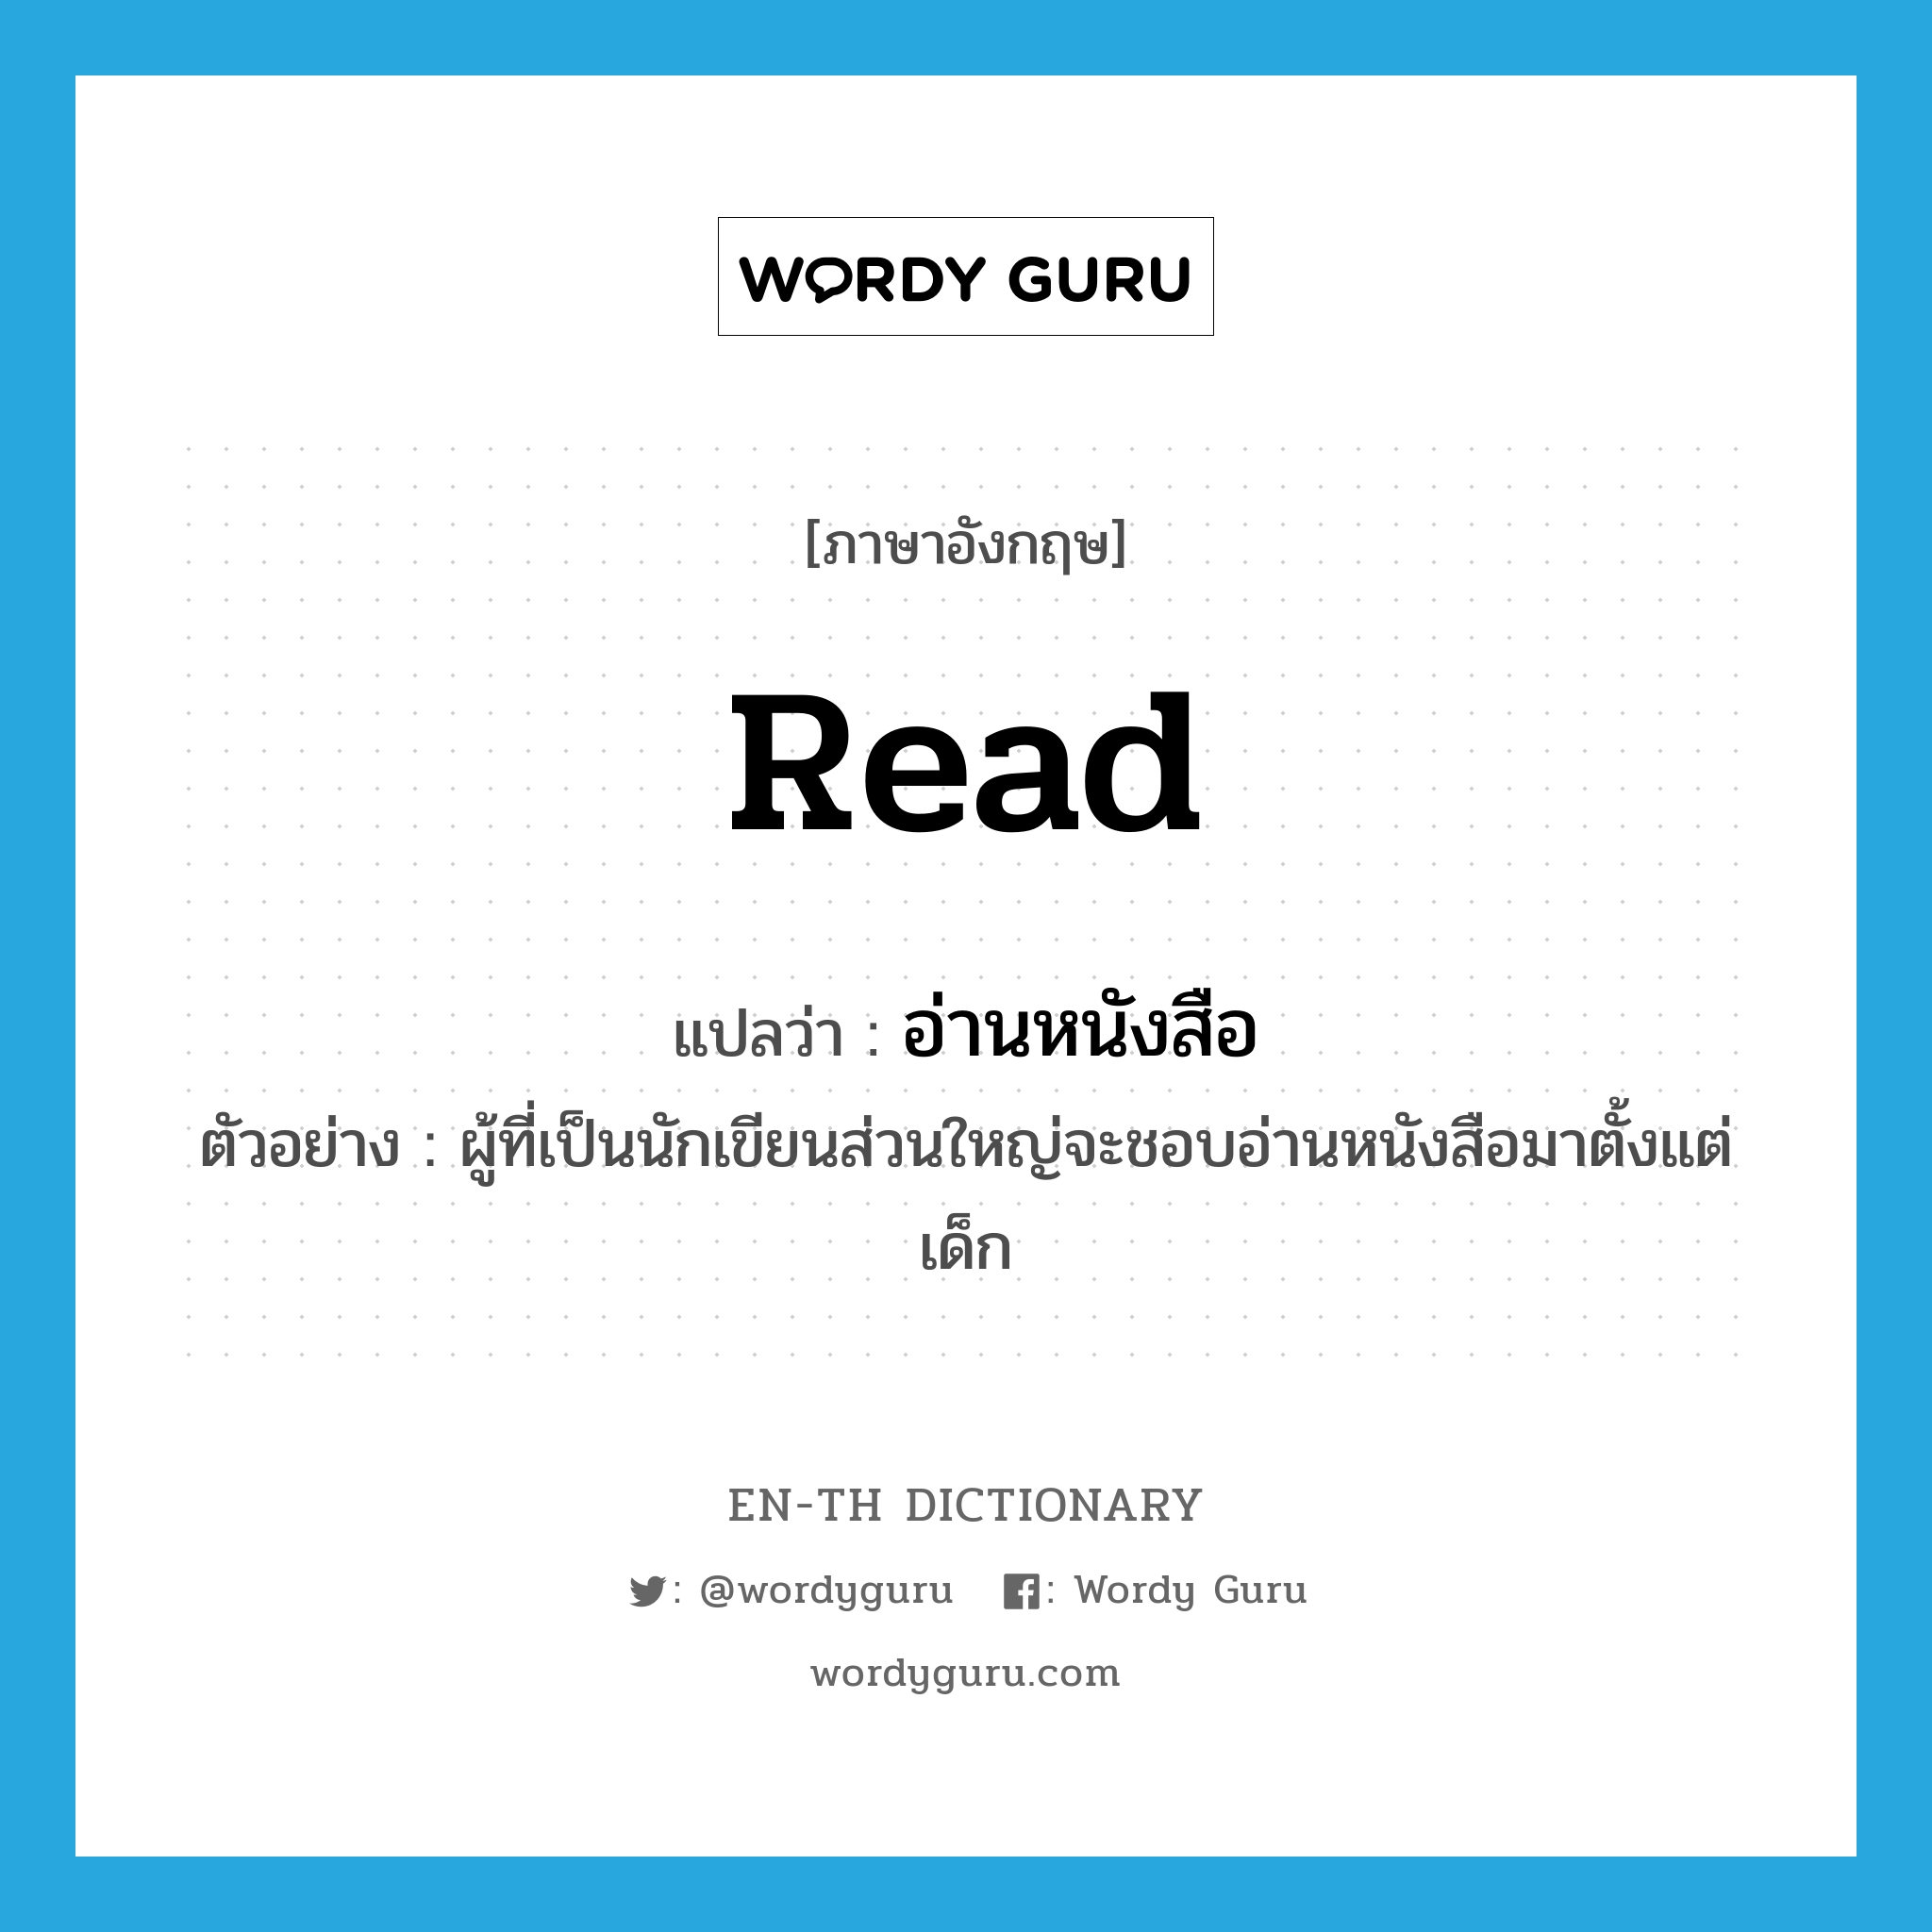 อ่านหนังสือ ภาษาอังกฤษ? | Wordy Guru